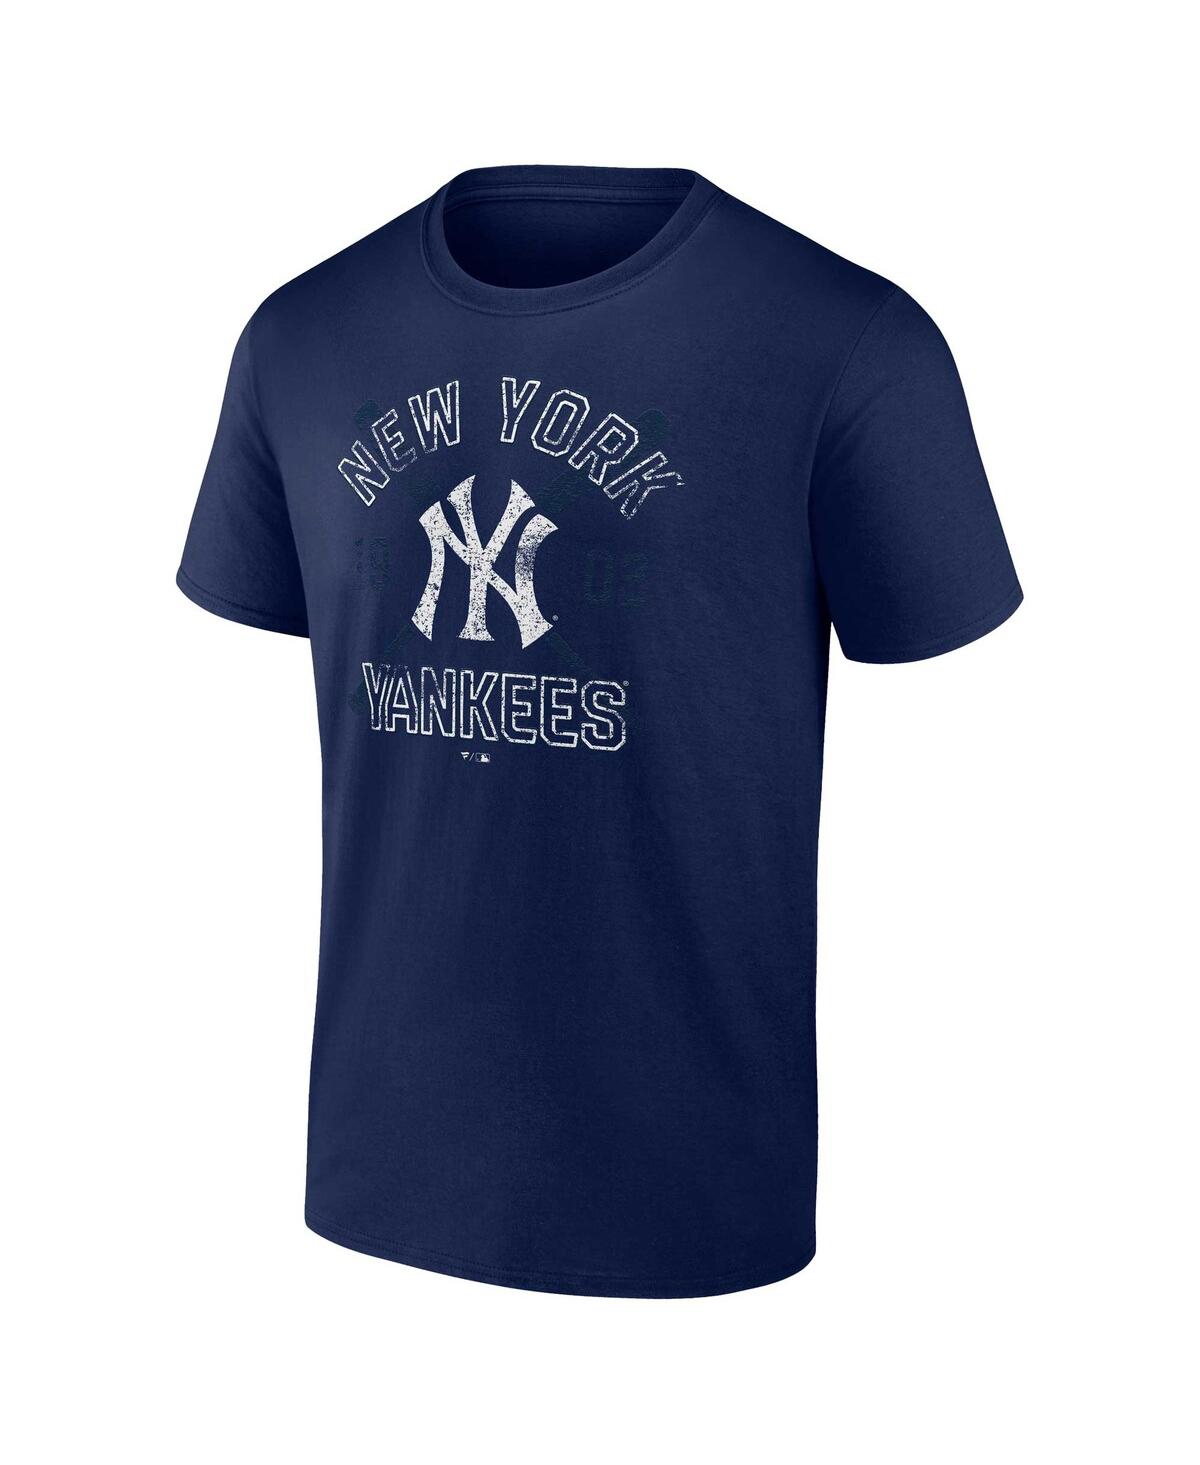 Shop Fanatics Men's  Navy New York Yankees Second Wind T-shirt